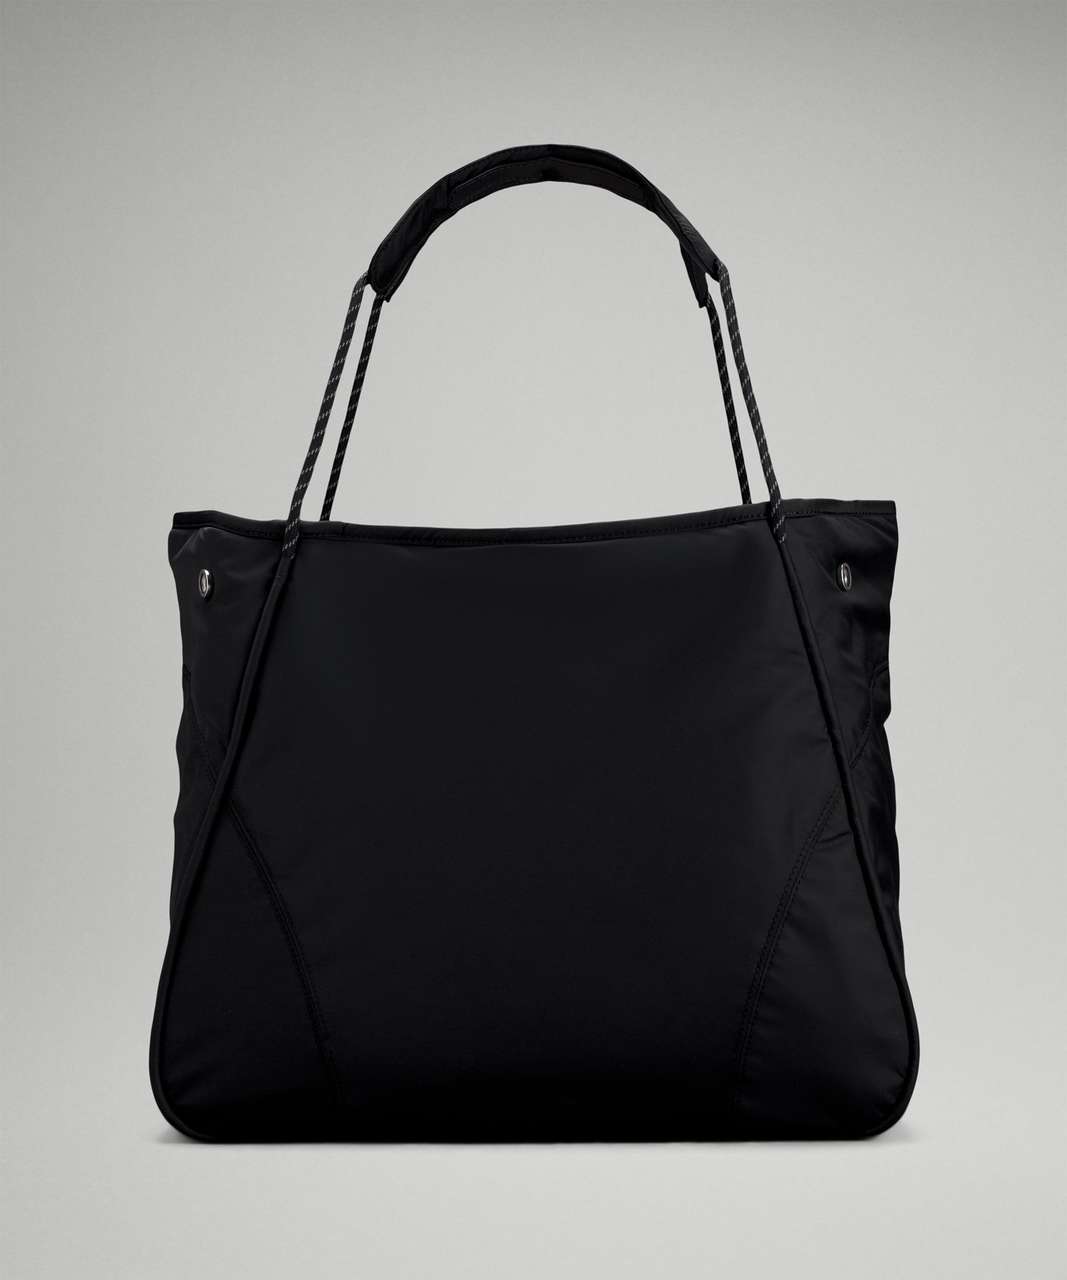 Lululemon Snap Large Tote Bag 28L - Black